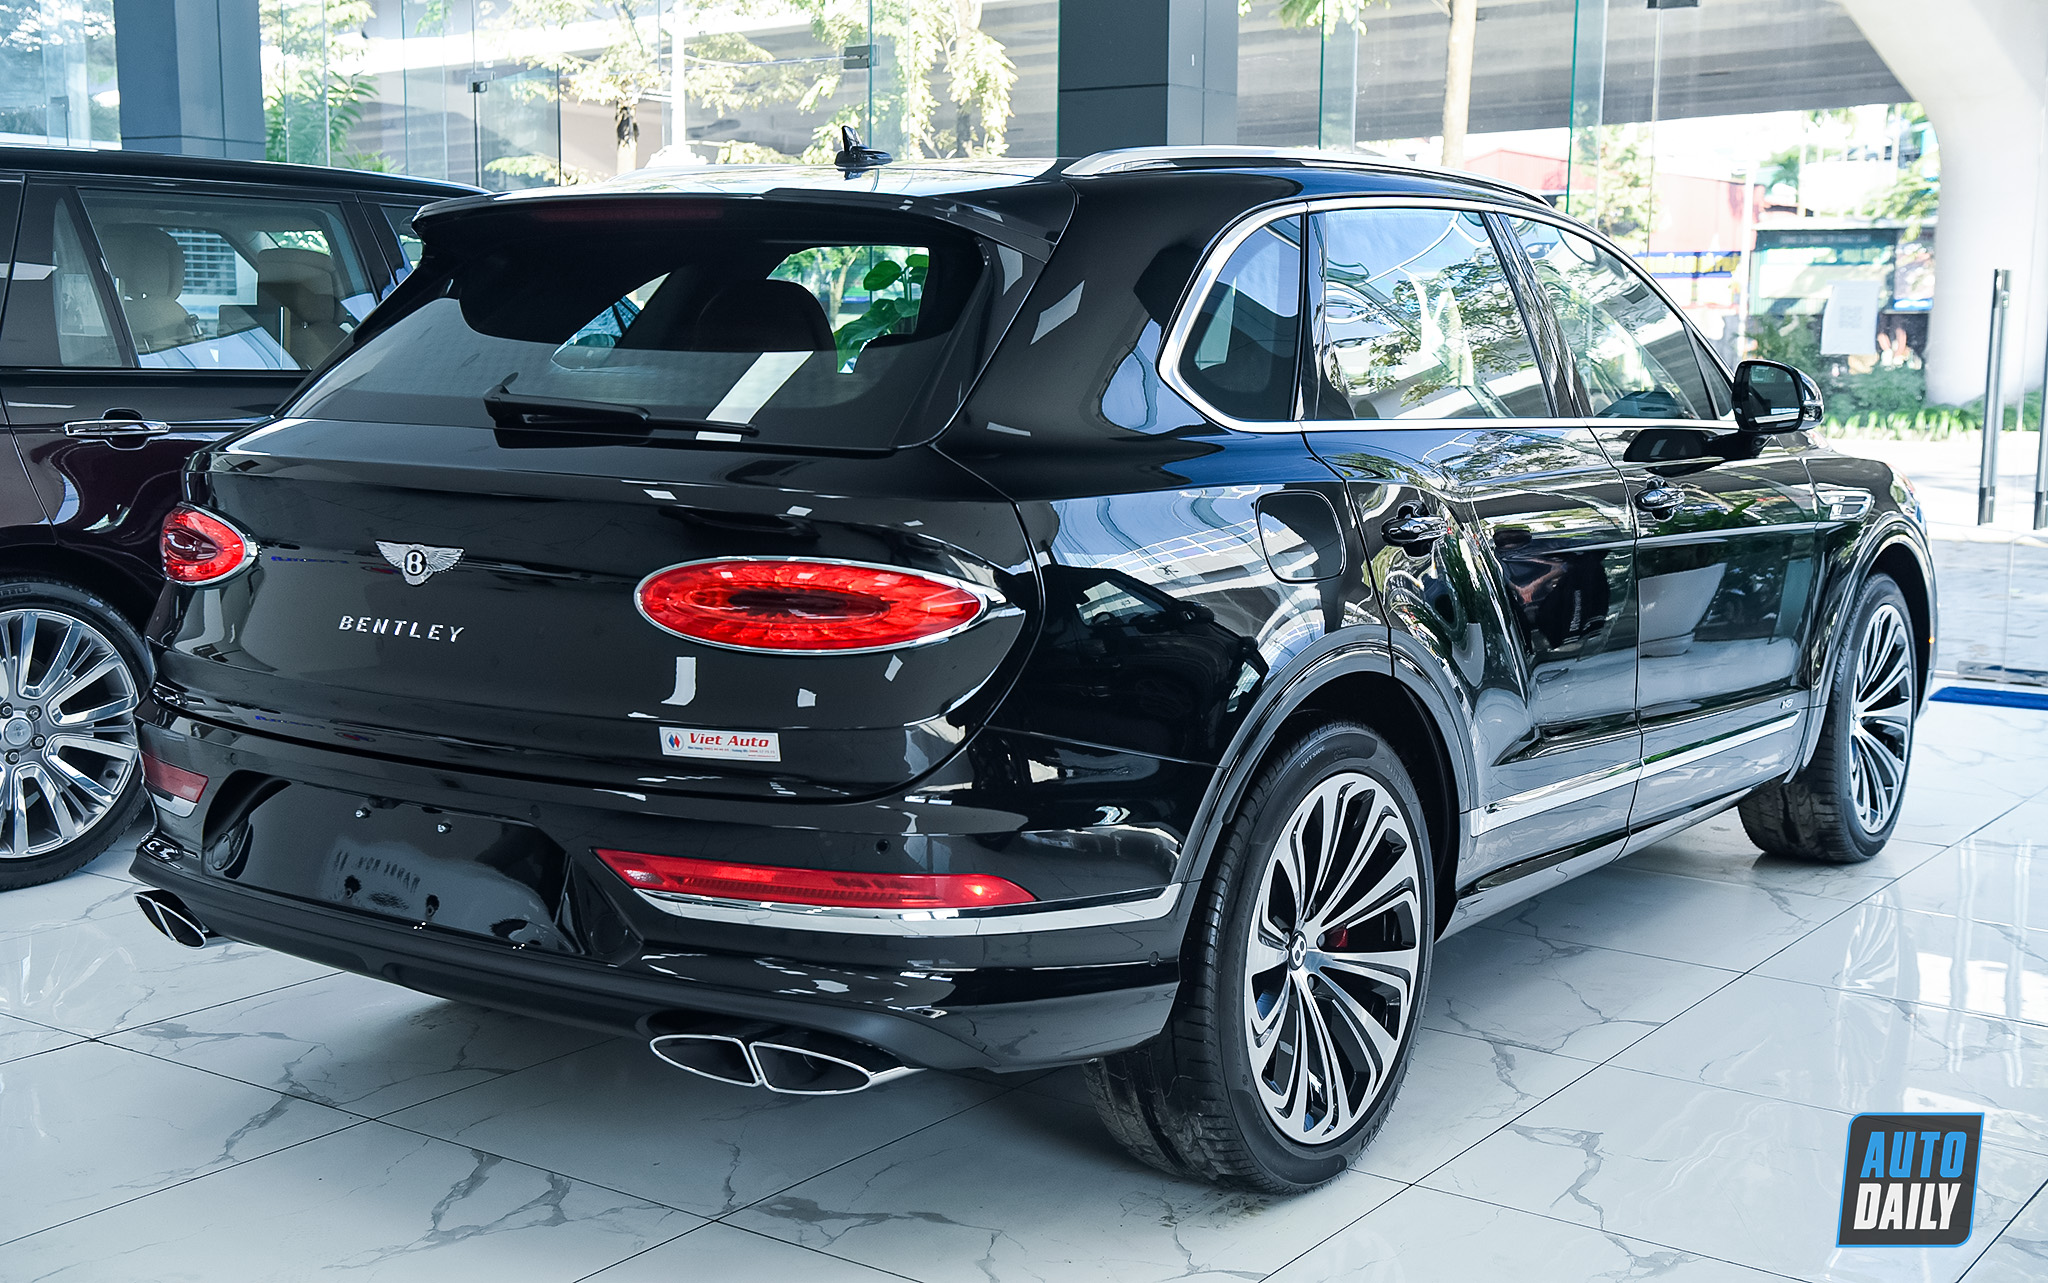 Chi tiết Bentley Bentayga 2021 nội thất trang trí Carbon giá hơn 18 tỷ adt-6557-copy.jpg